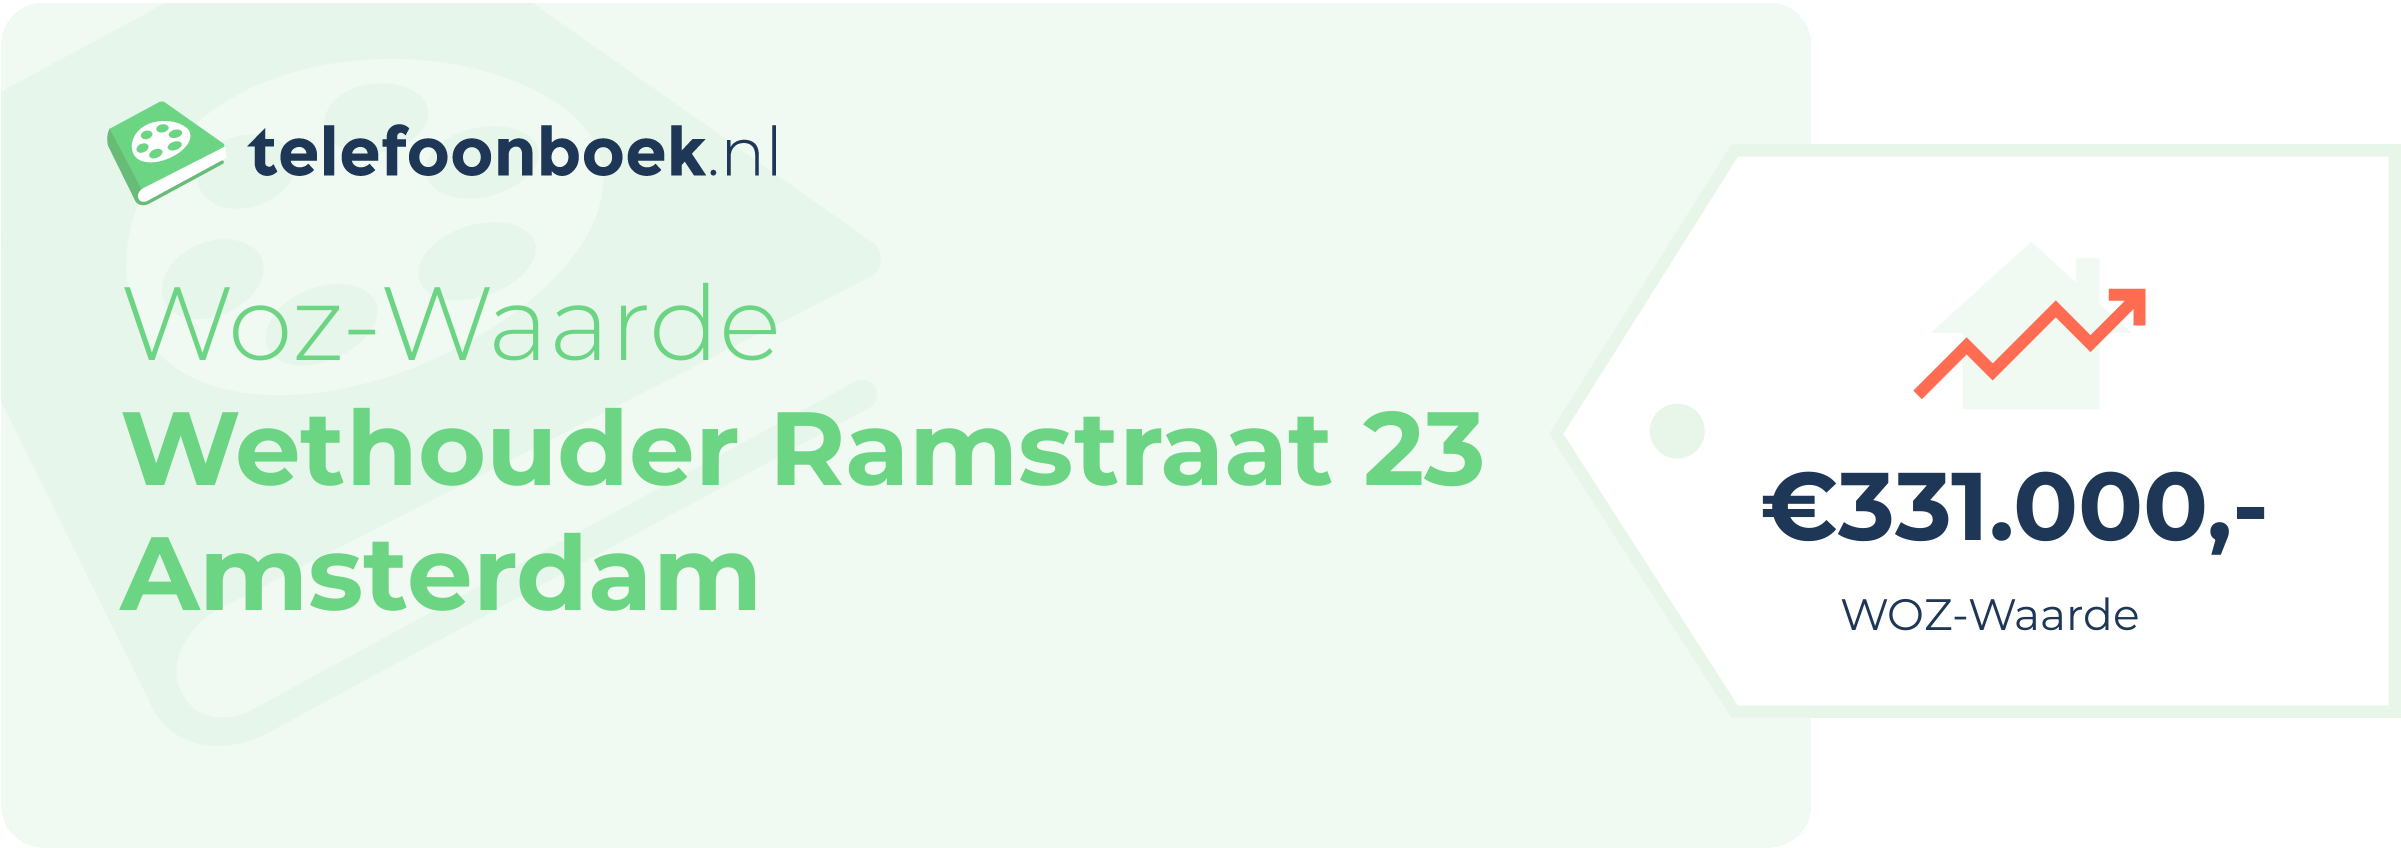 WOZ-waarde Wethouder Ramstraat 23 Amsterdam